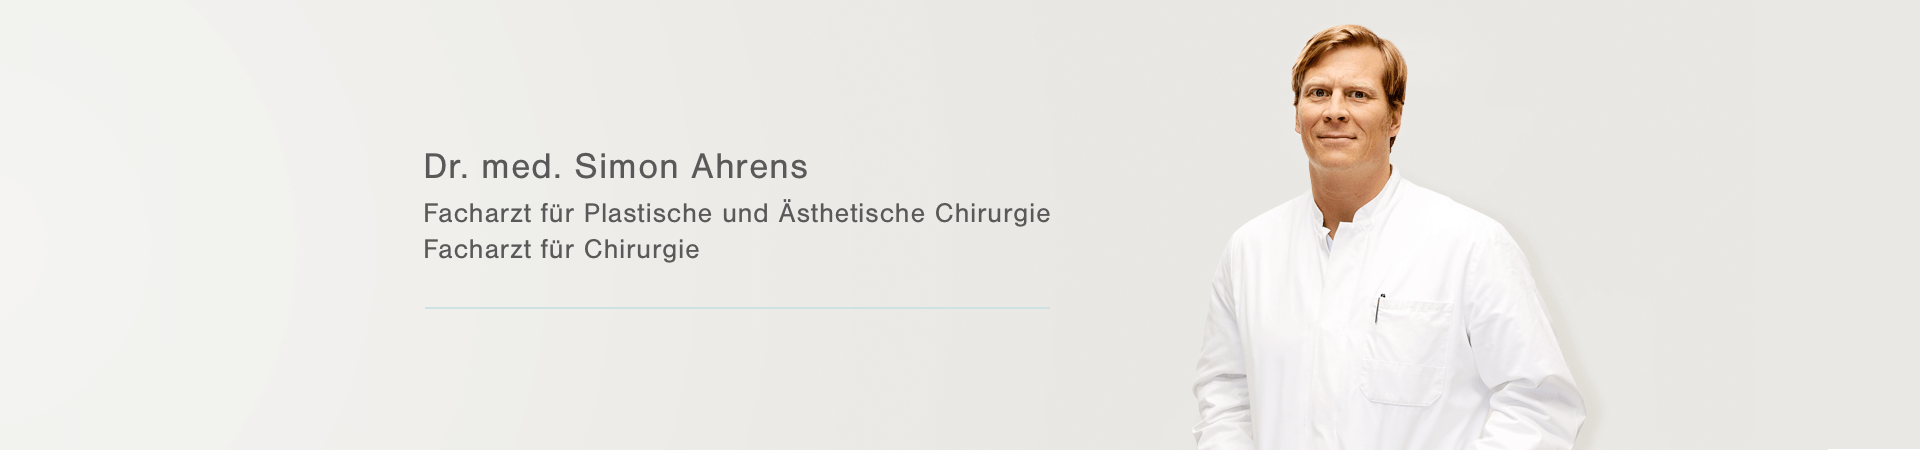 Plastische Chirurgie Berlin, AesthetiCum, Dr. Ahrens 